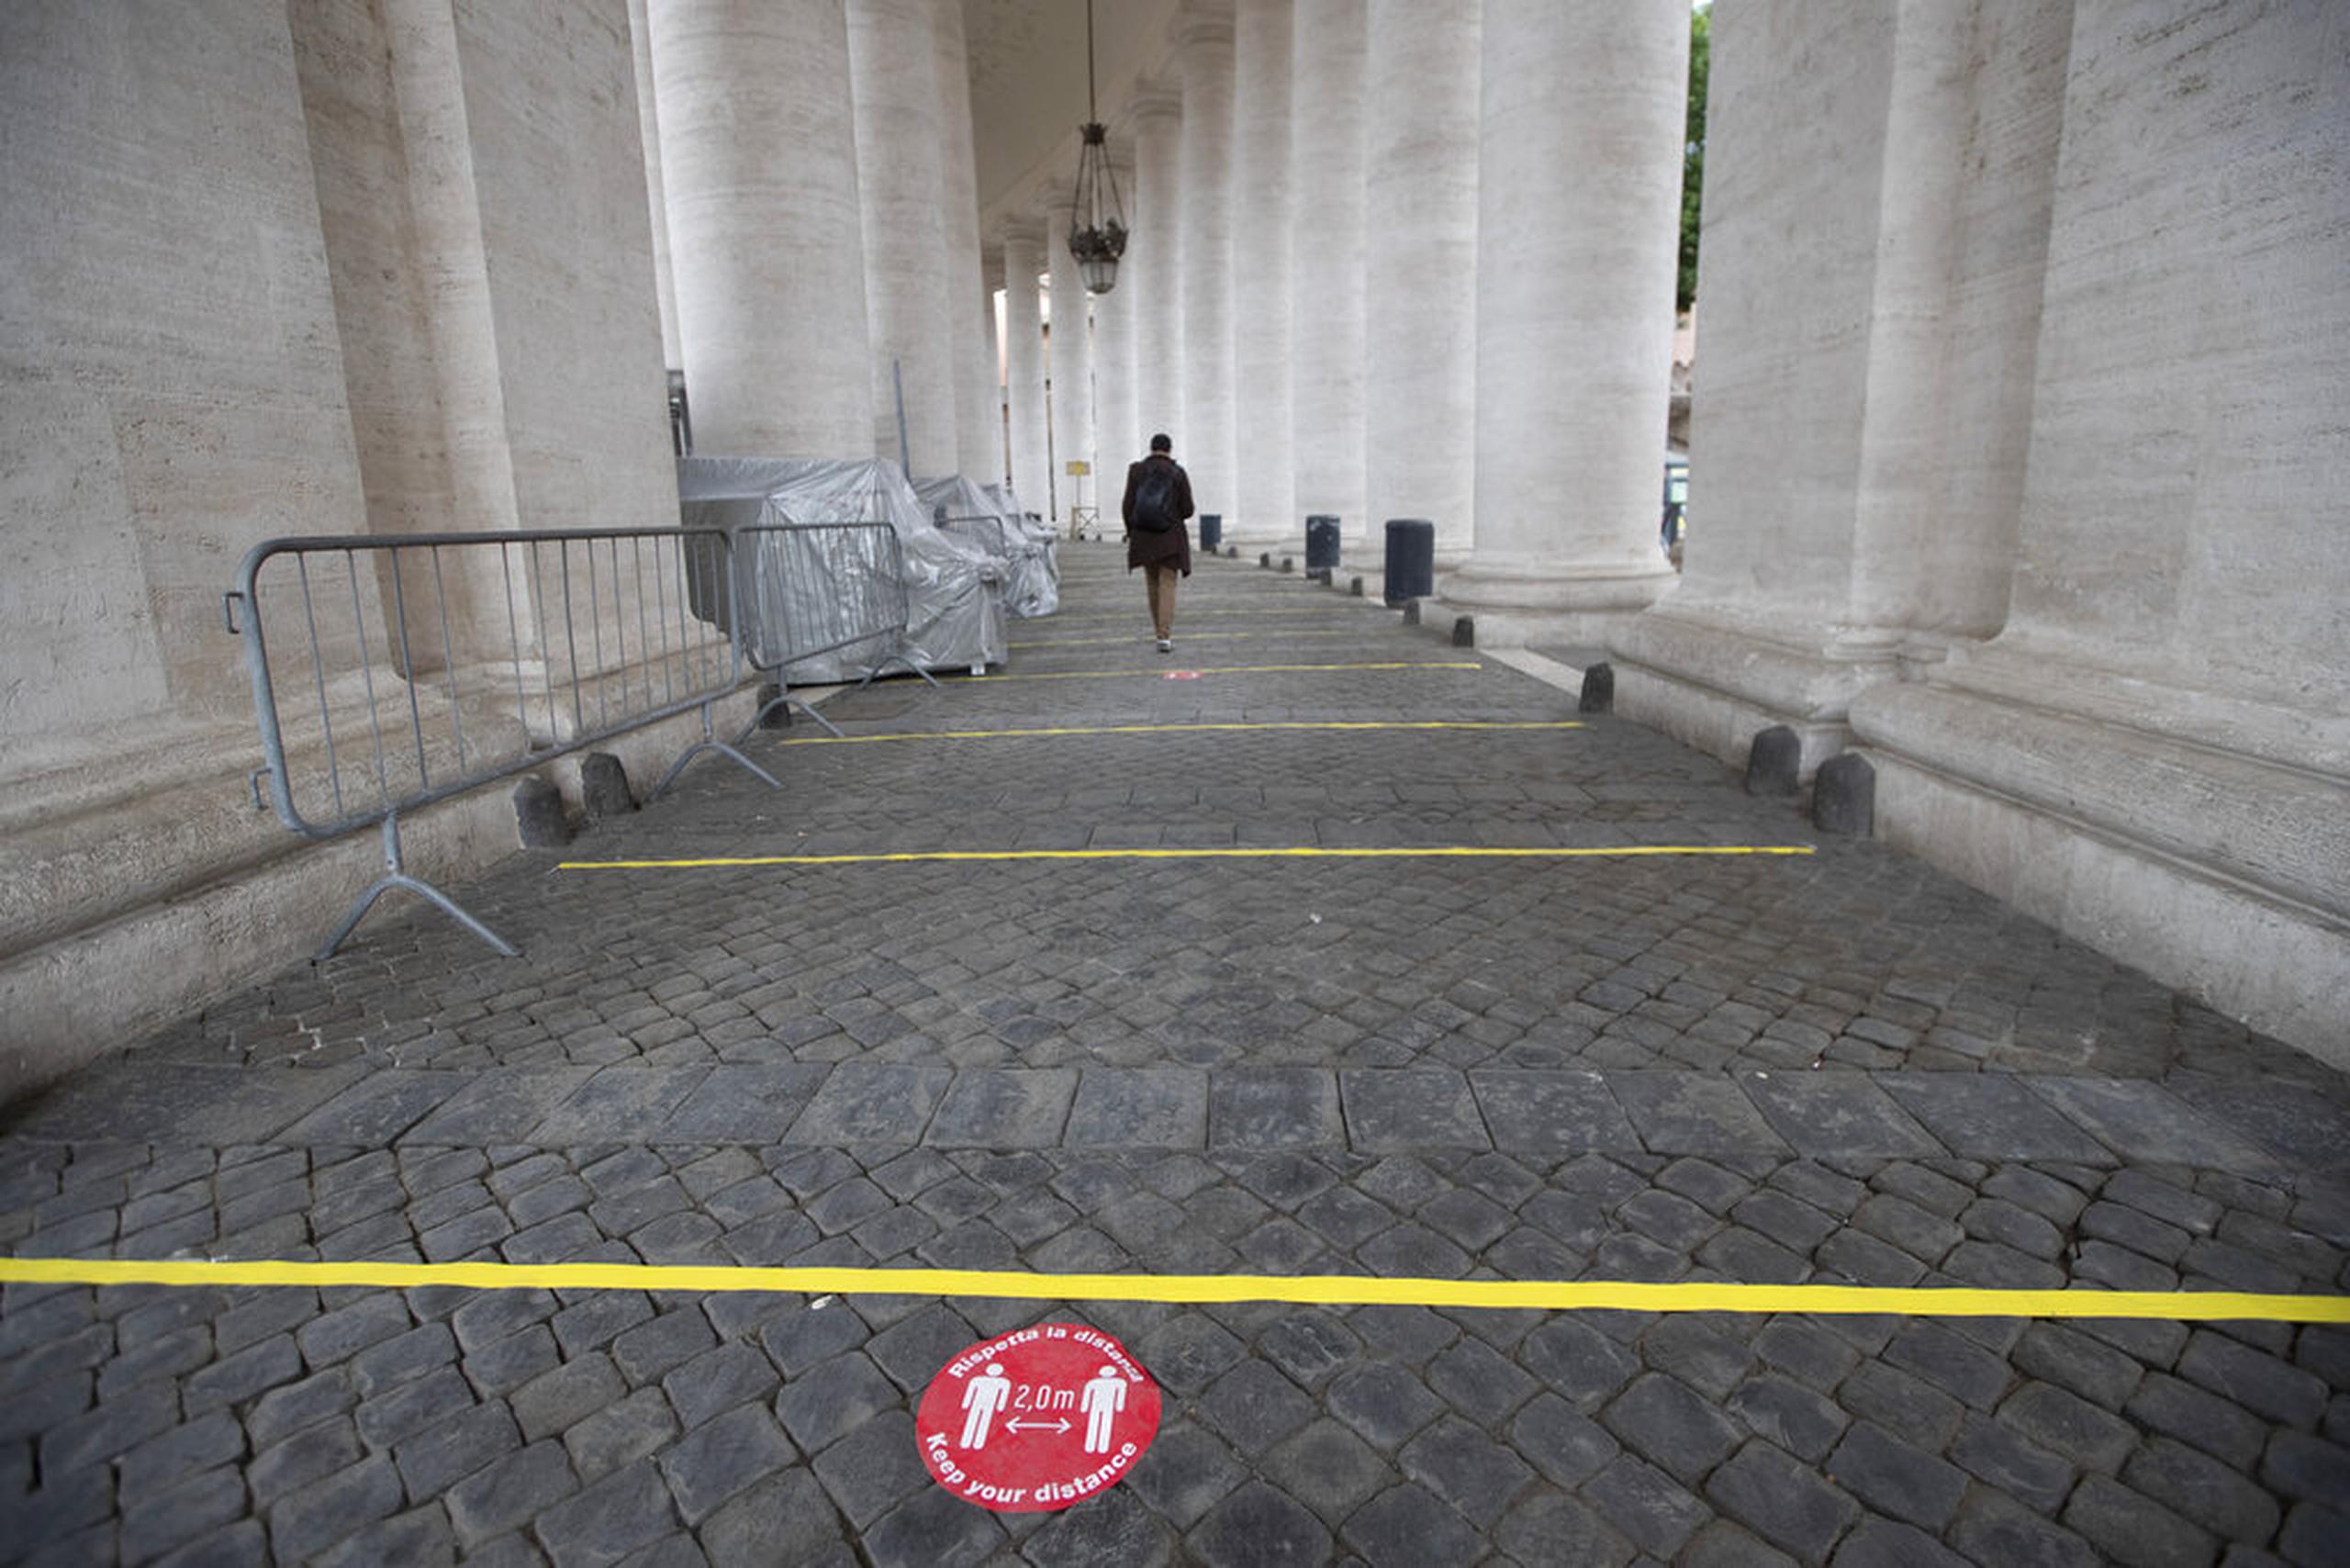 Marcas de distanciamiento social fueron colocadas en el suelo del Vaticano.